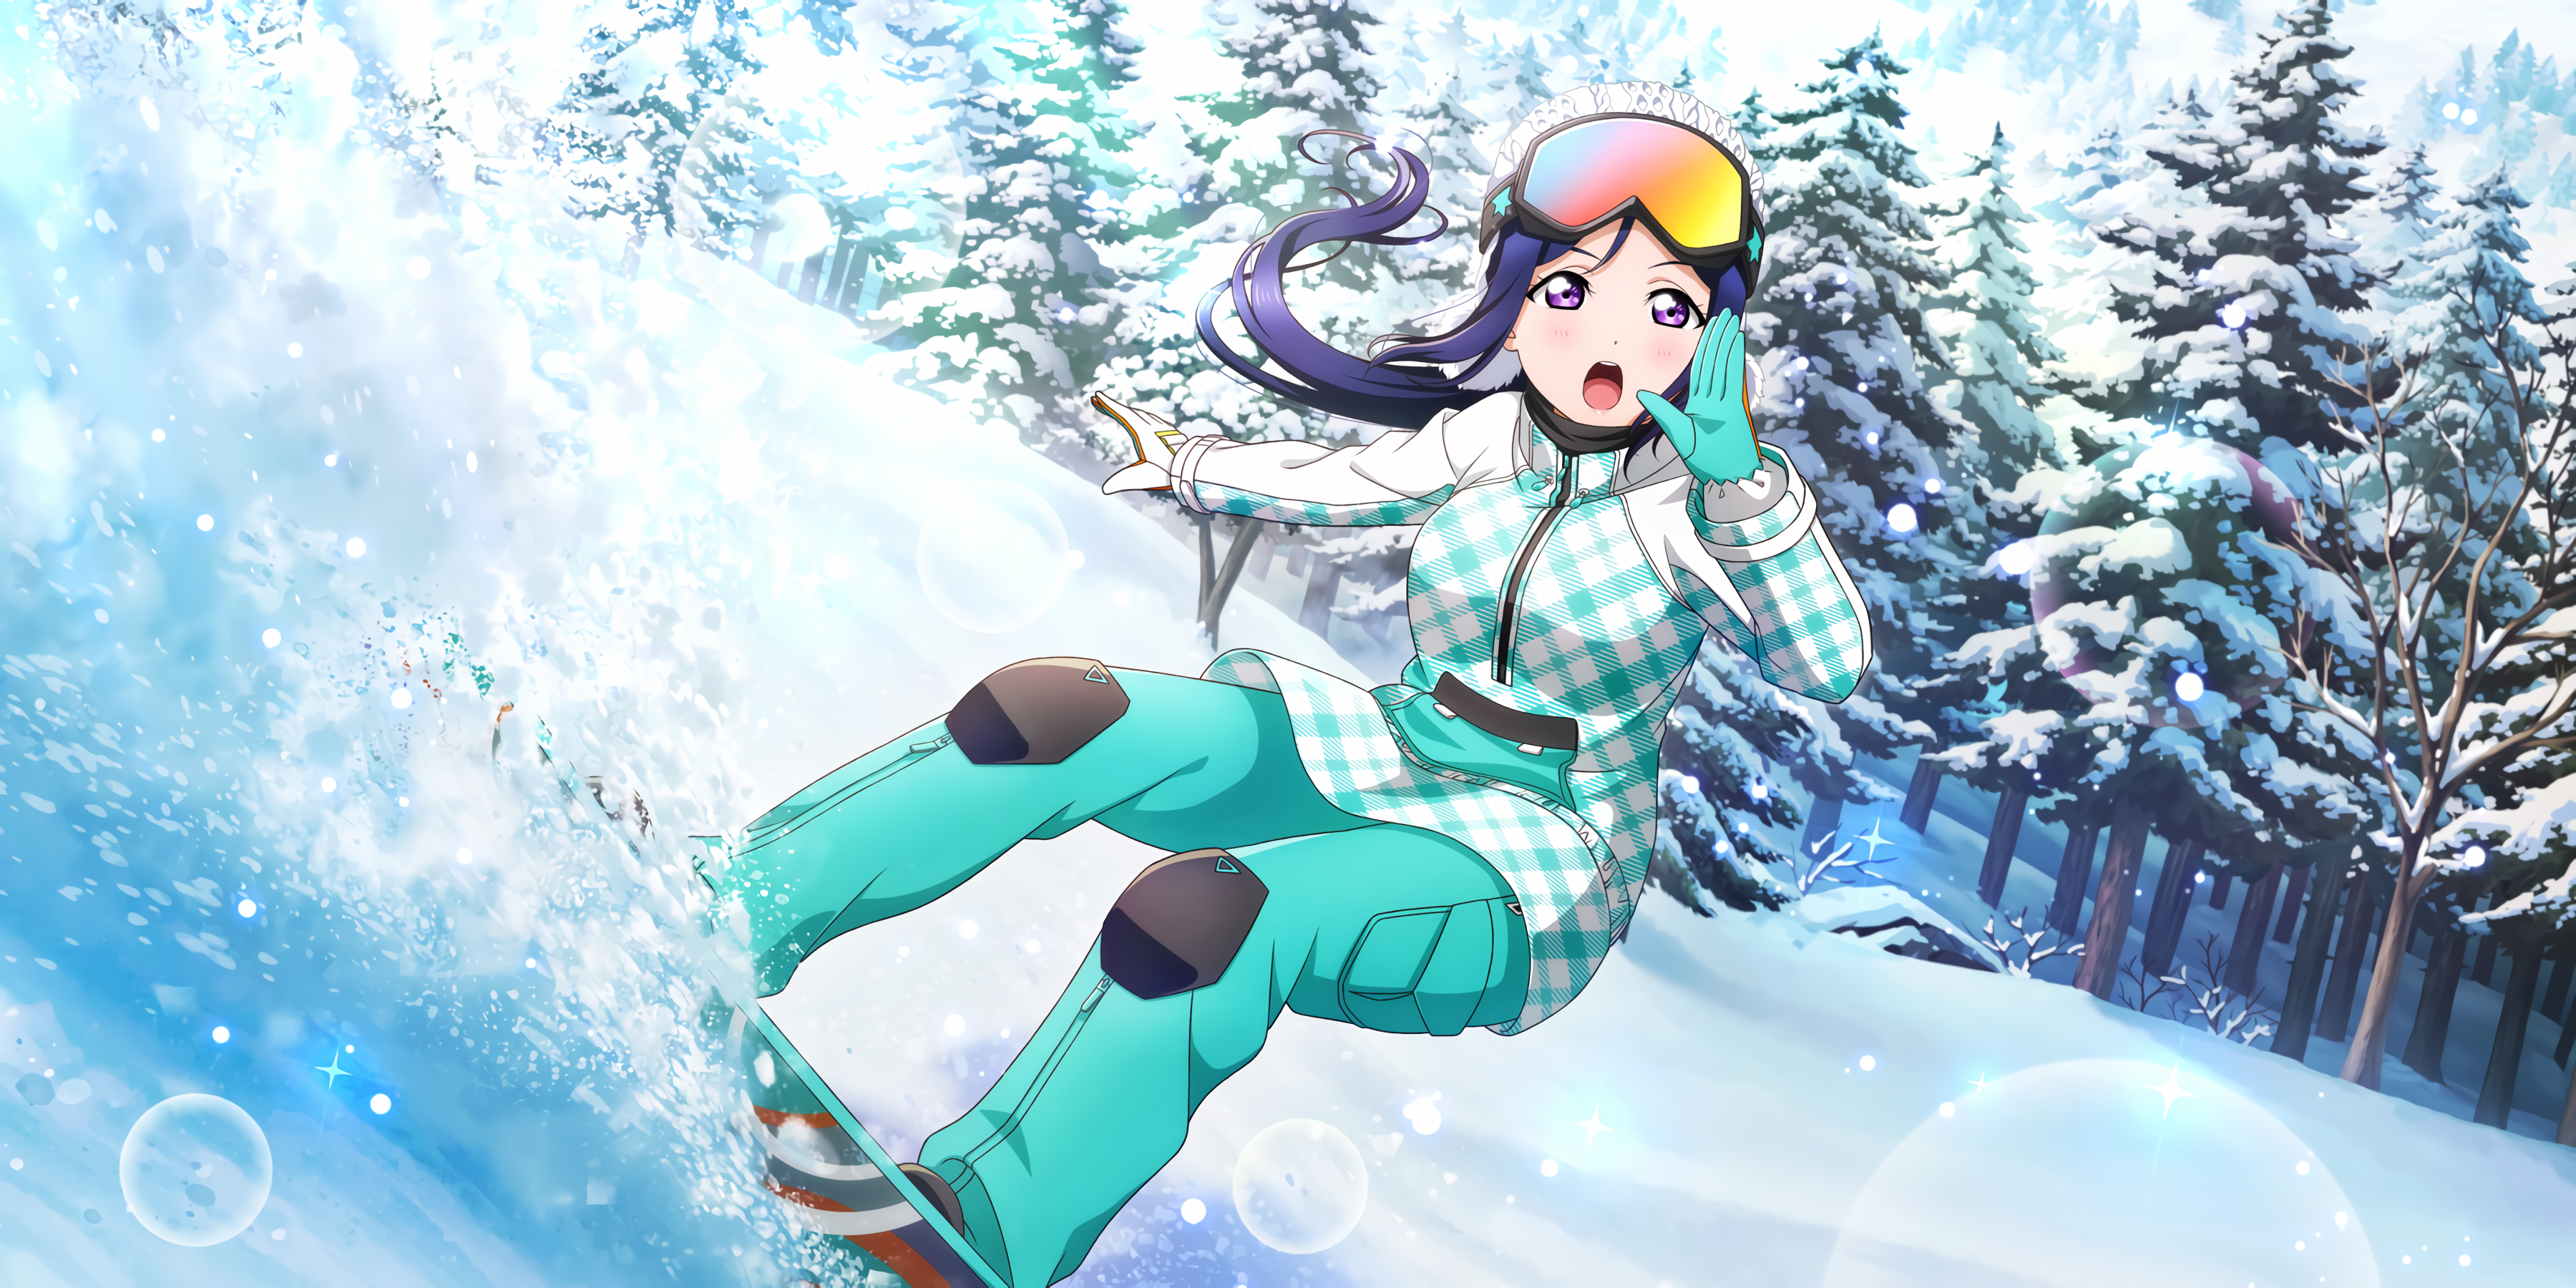 Update more than 140 anime snowboarding gear super hot - 3tdesign.edu.vn